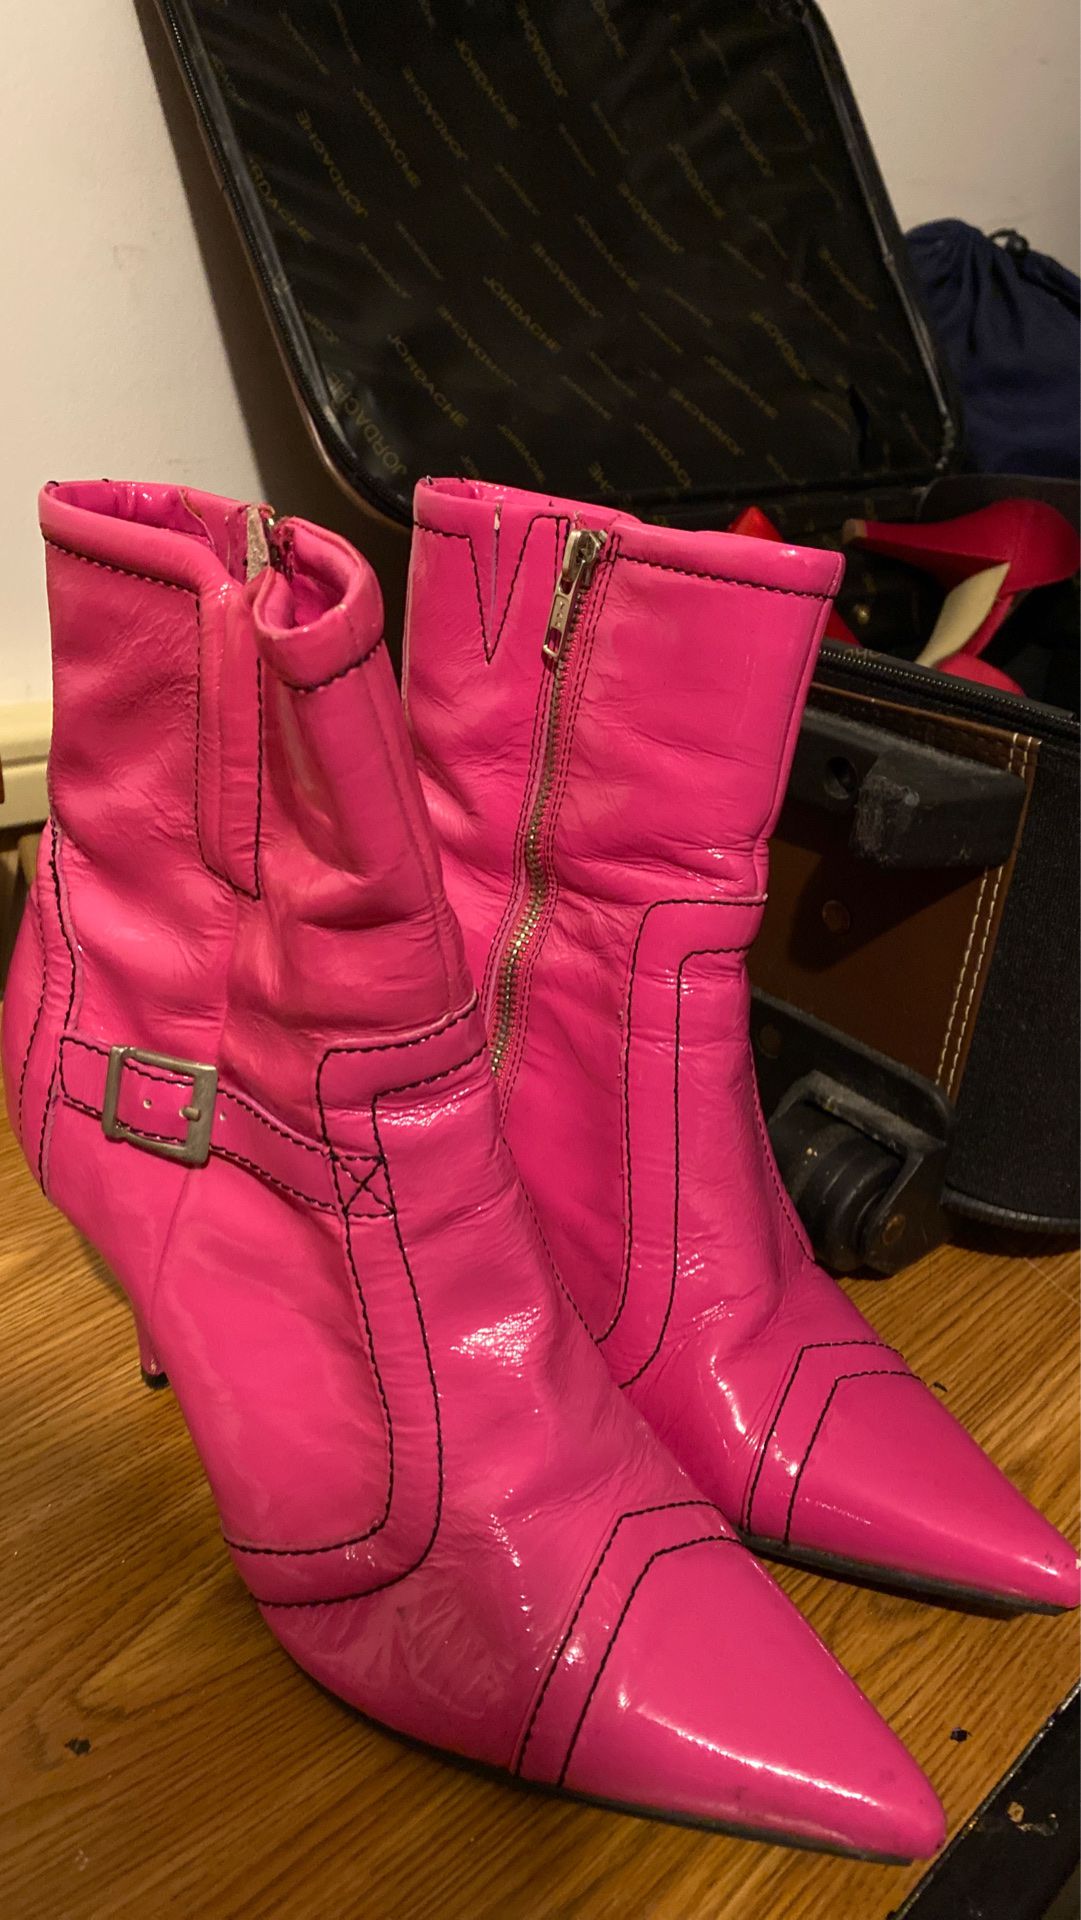 Hot pink women’s boots zip up BRAND NEW MAKE ME AN OFFER